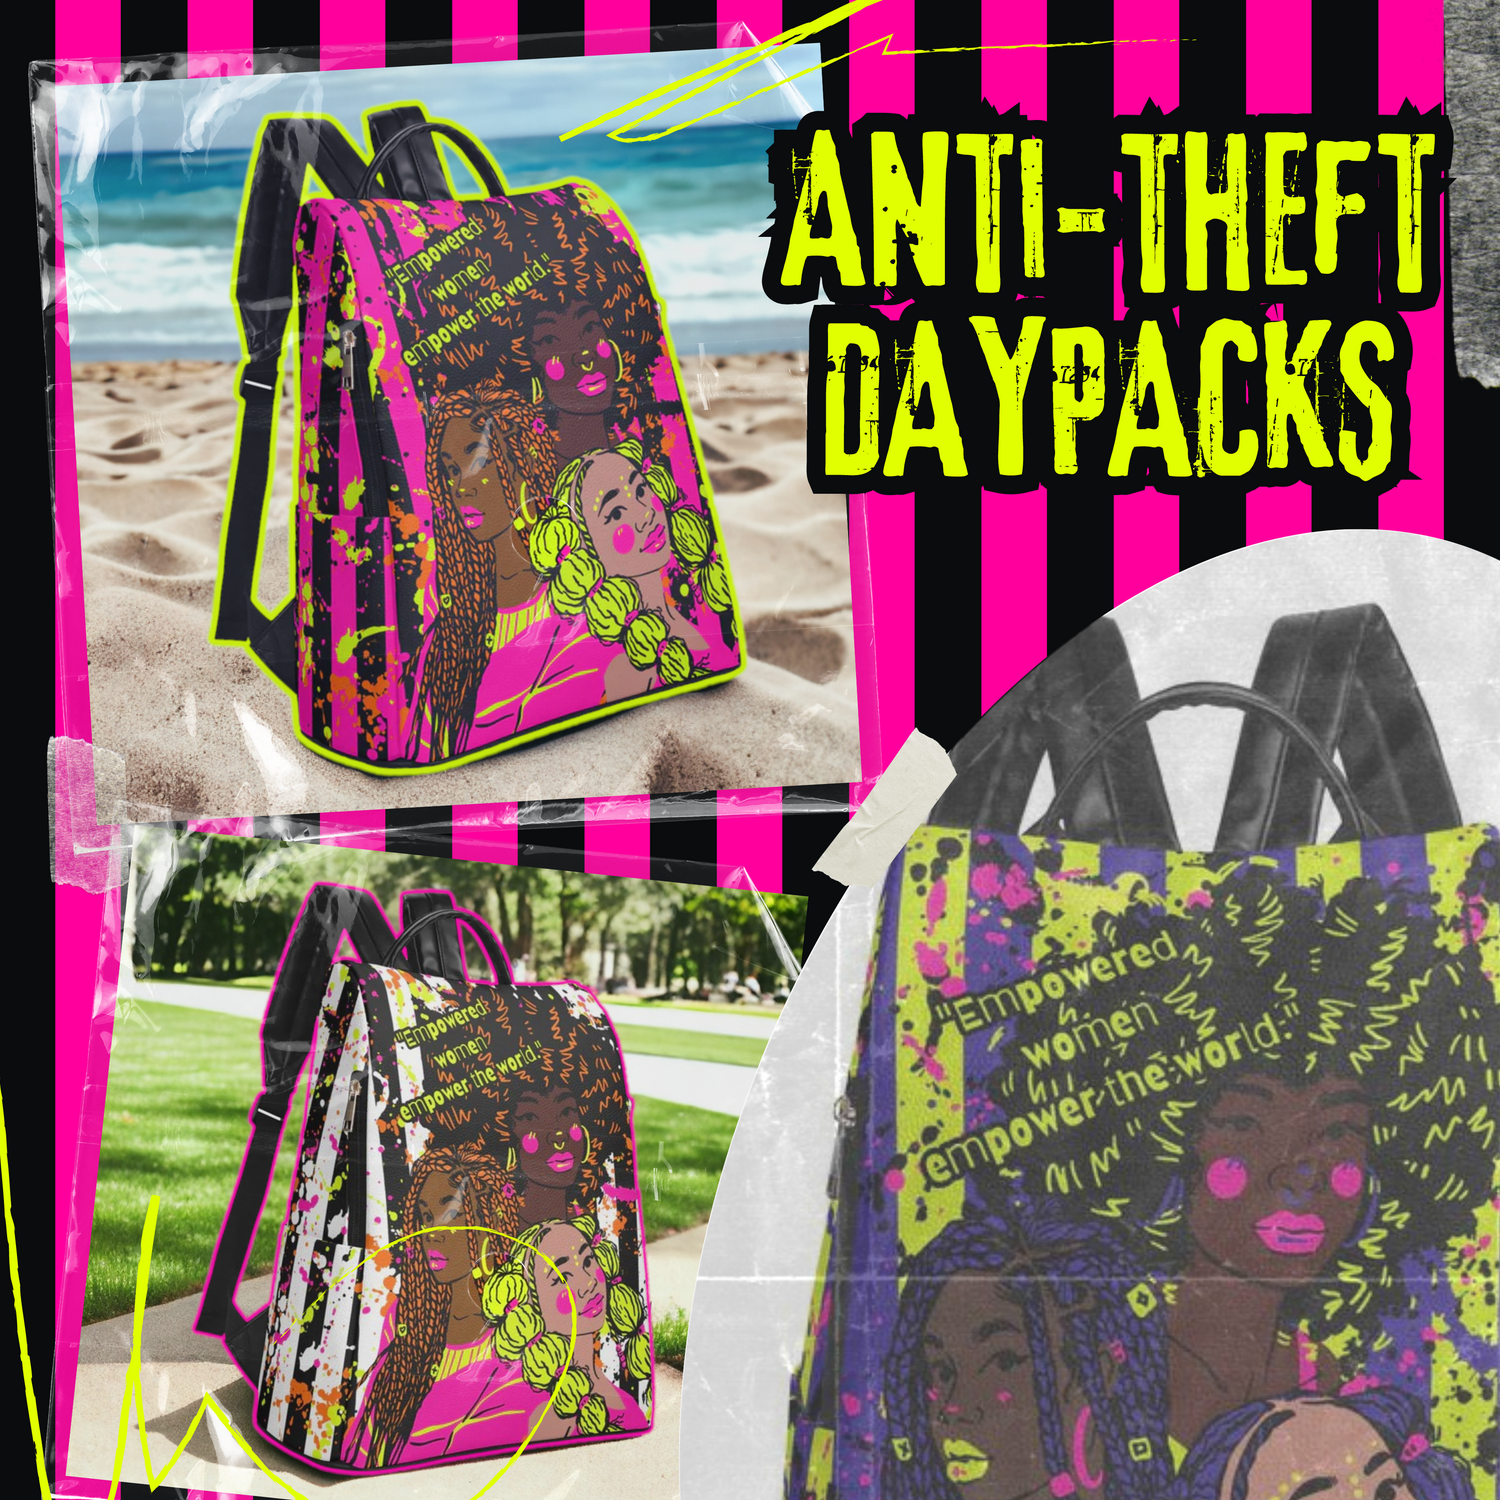 Anti-theft Daypacks